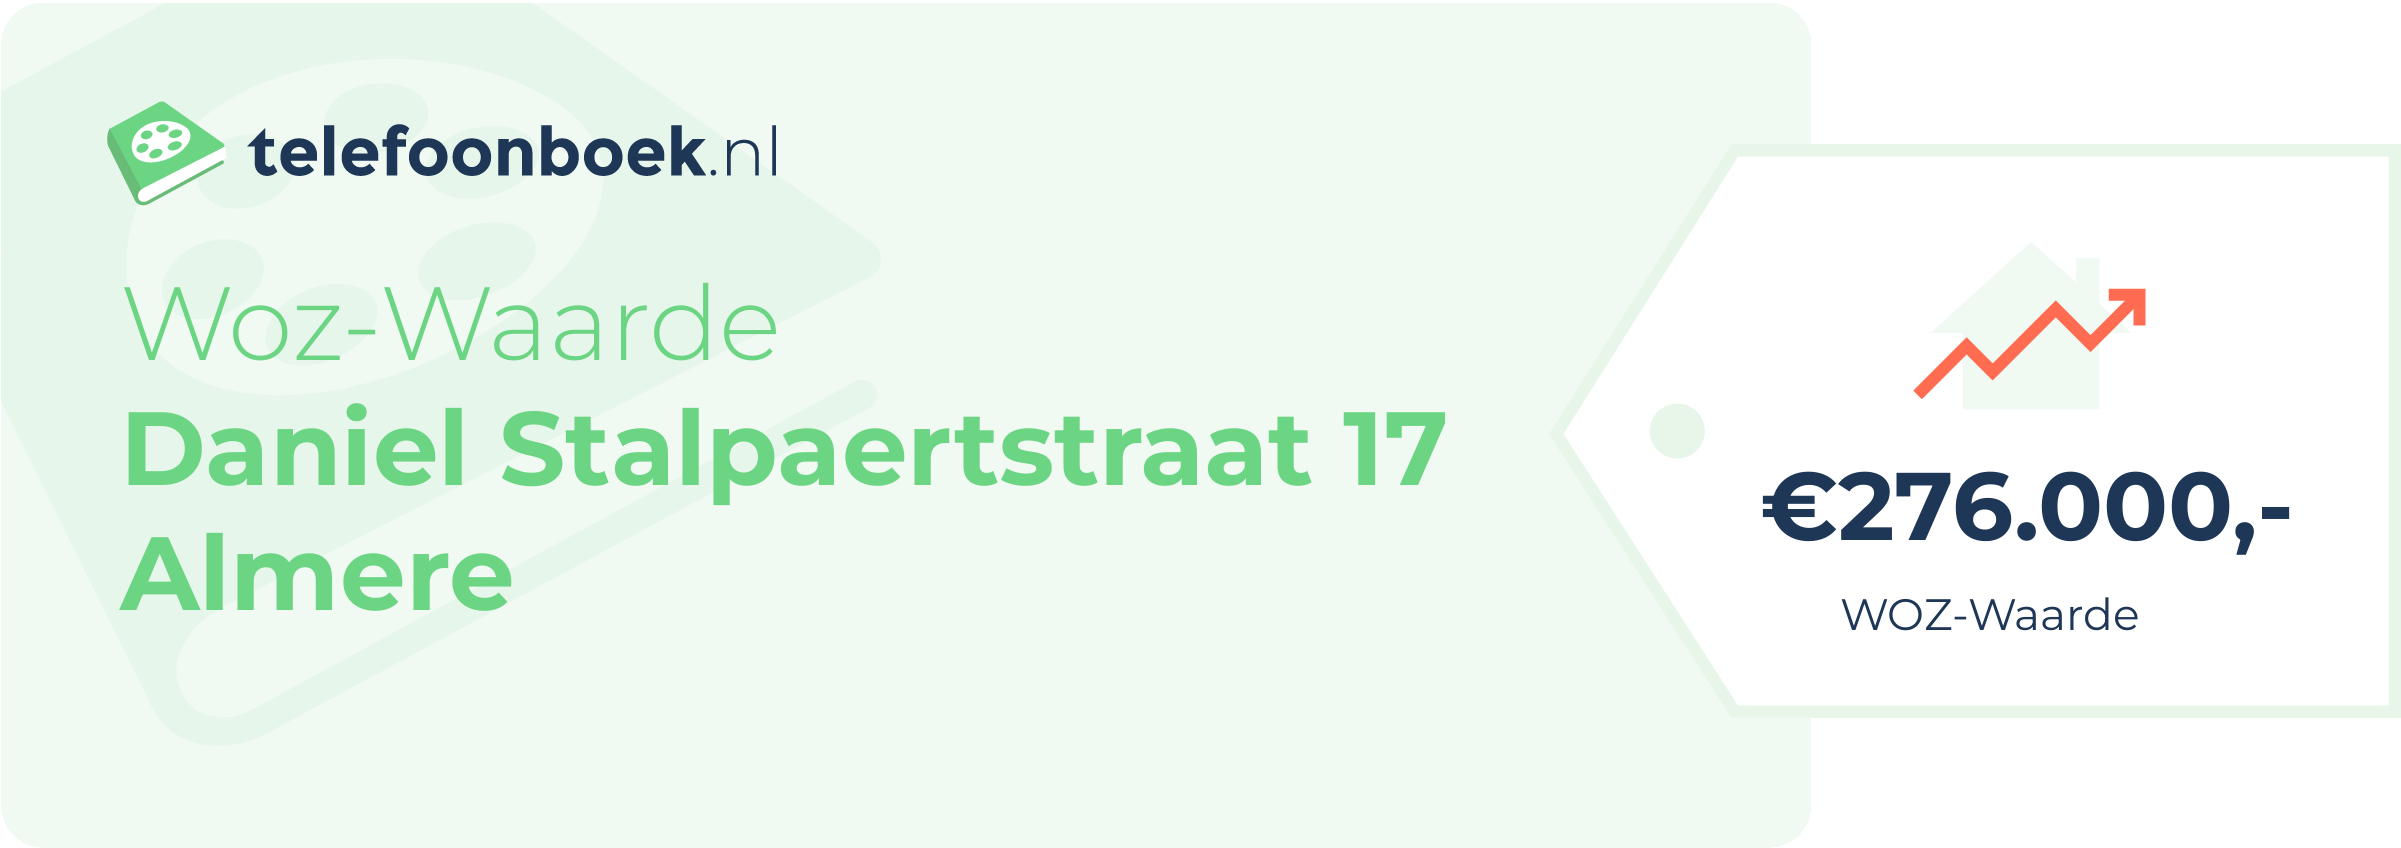 WOZ-waarde Daniel Stalpaertstraat 17 Almere